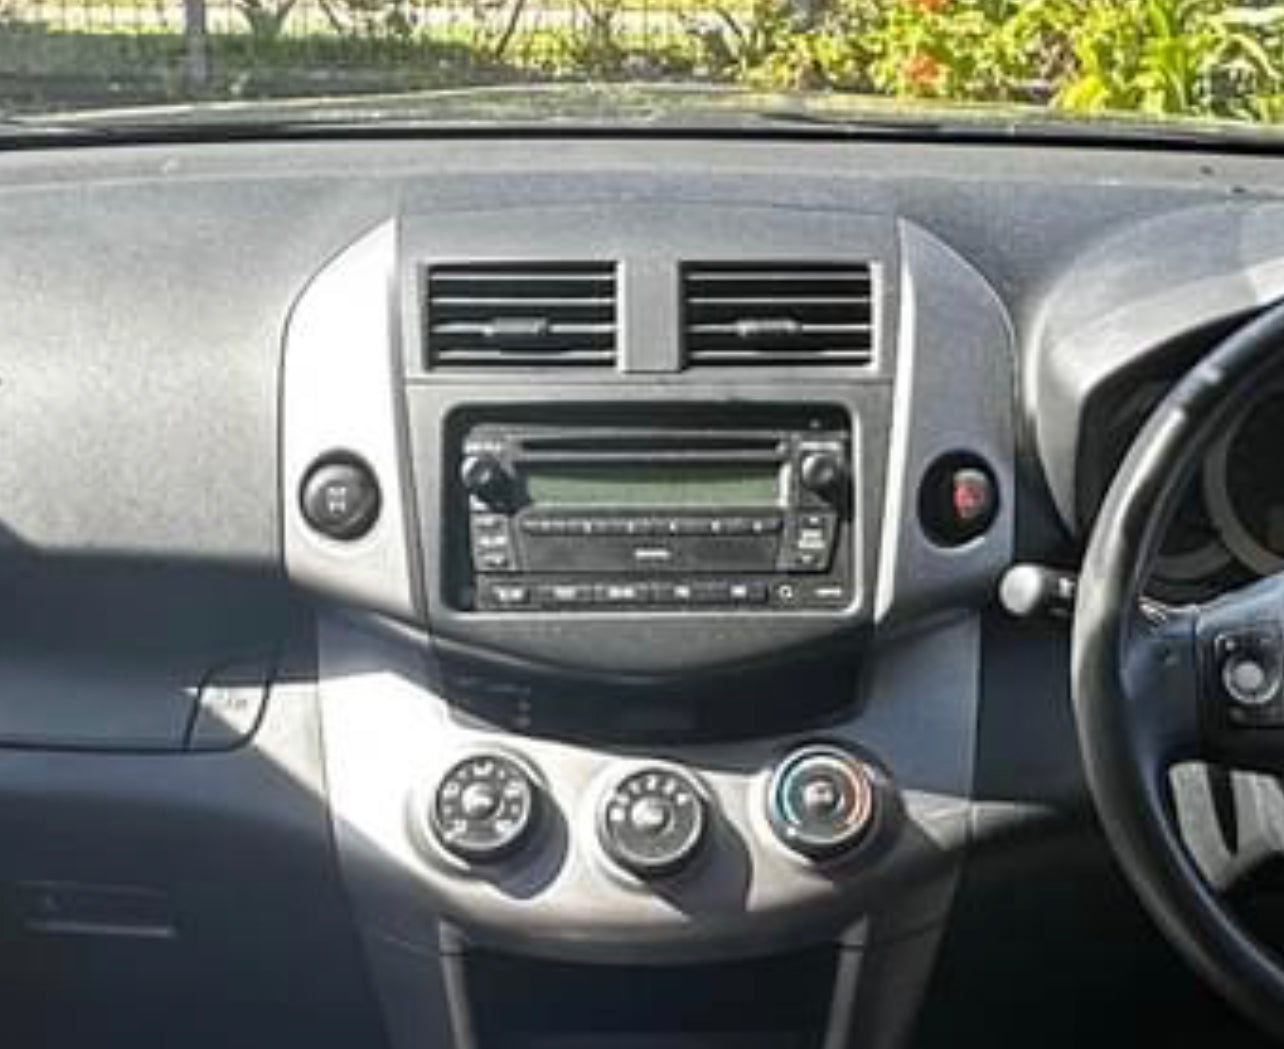 Toyota RAV4 2006-2012 Apple CarPlay and Android Auto Plug and Plug Head Unit Upgrade Kit